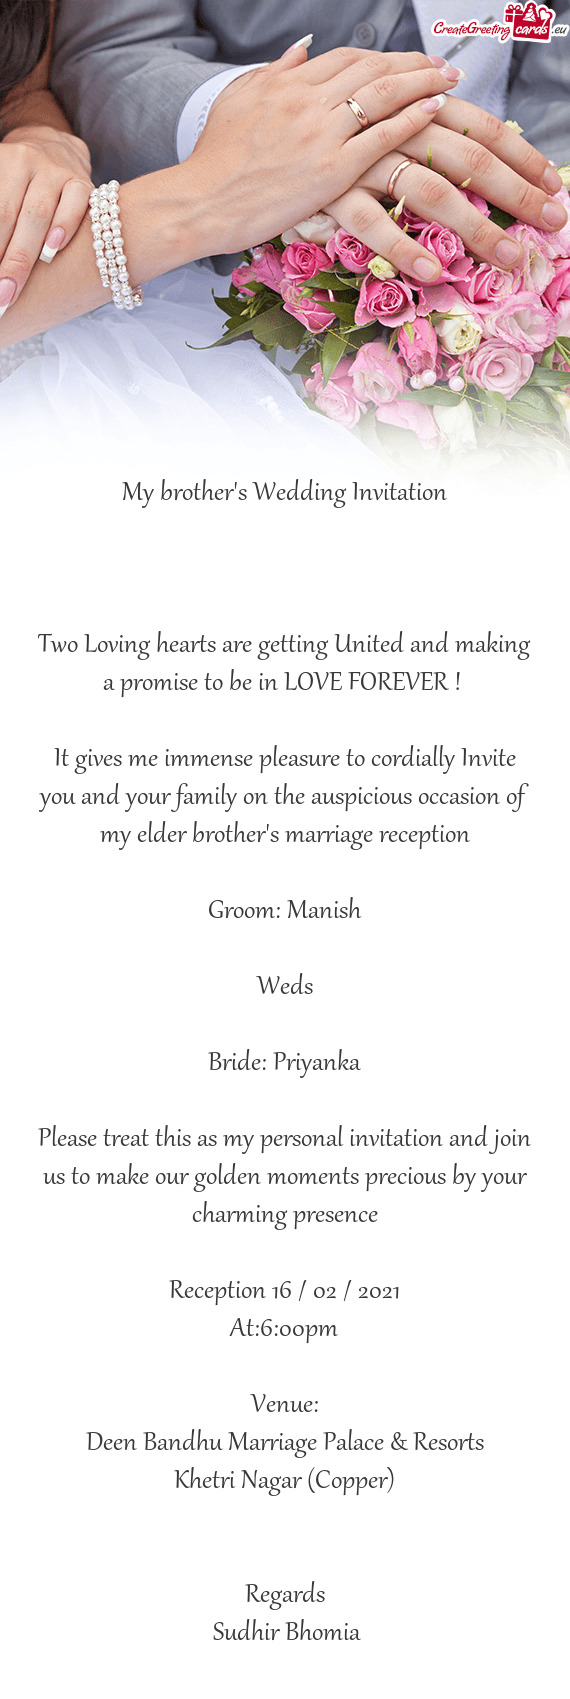 Bride: Priyanka